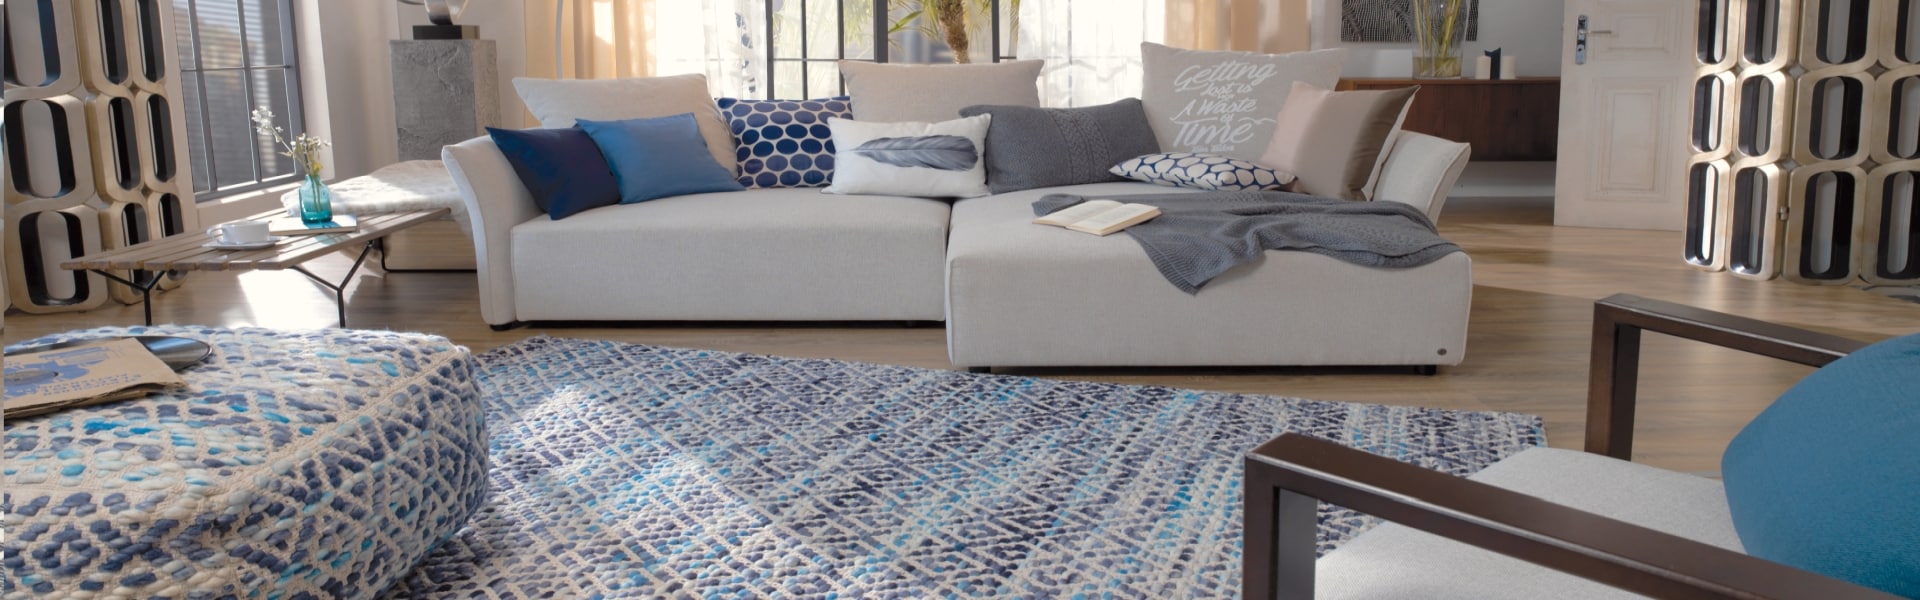 Bild Teppich im Wohnzimmer blau weiss